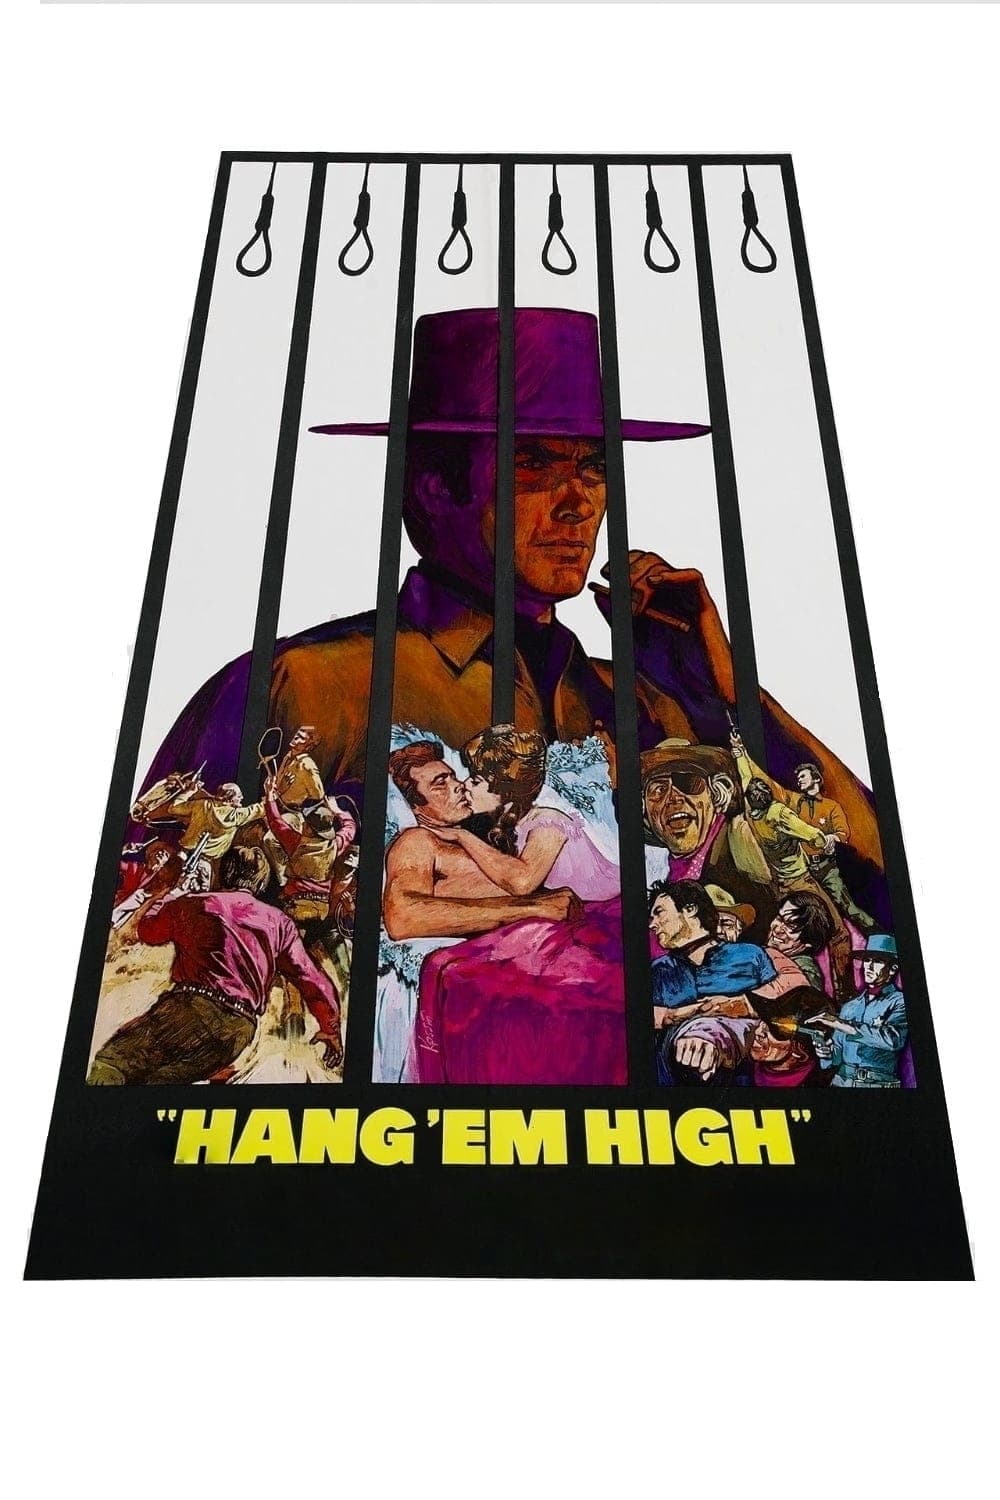 Hang 'em High est-il disponible sur Netflix ou autre ?